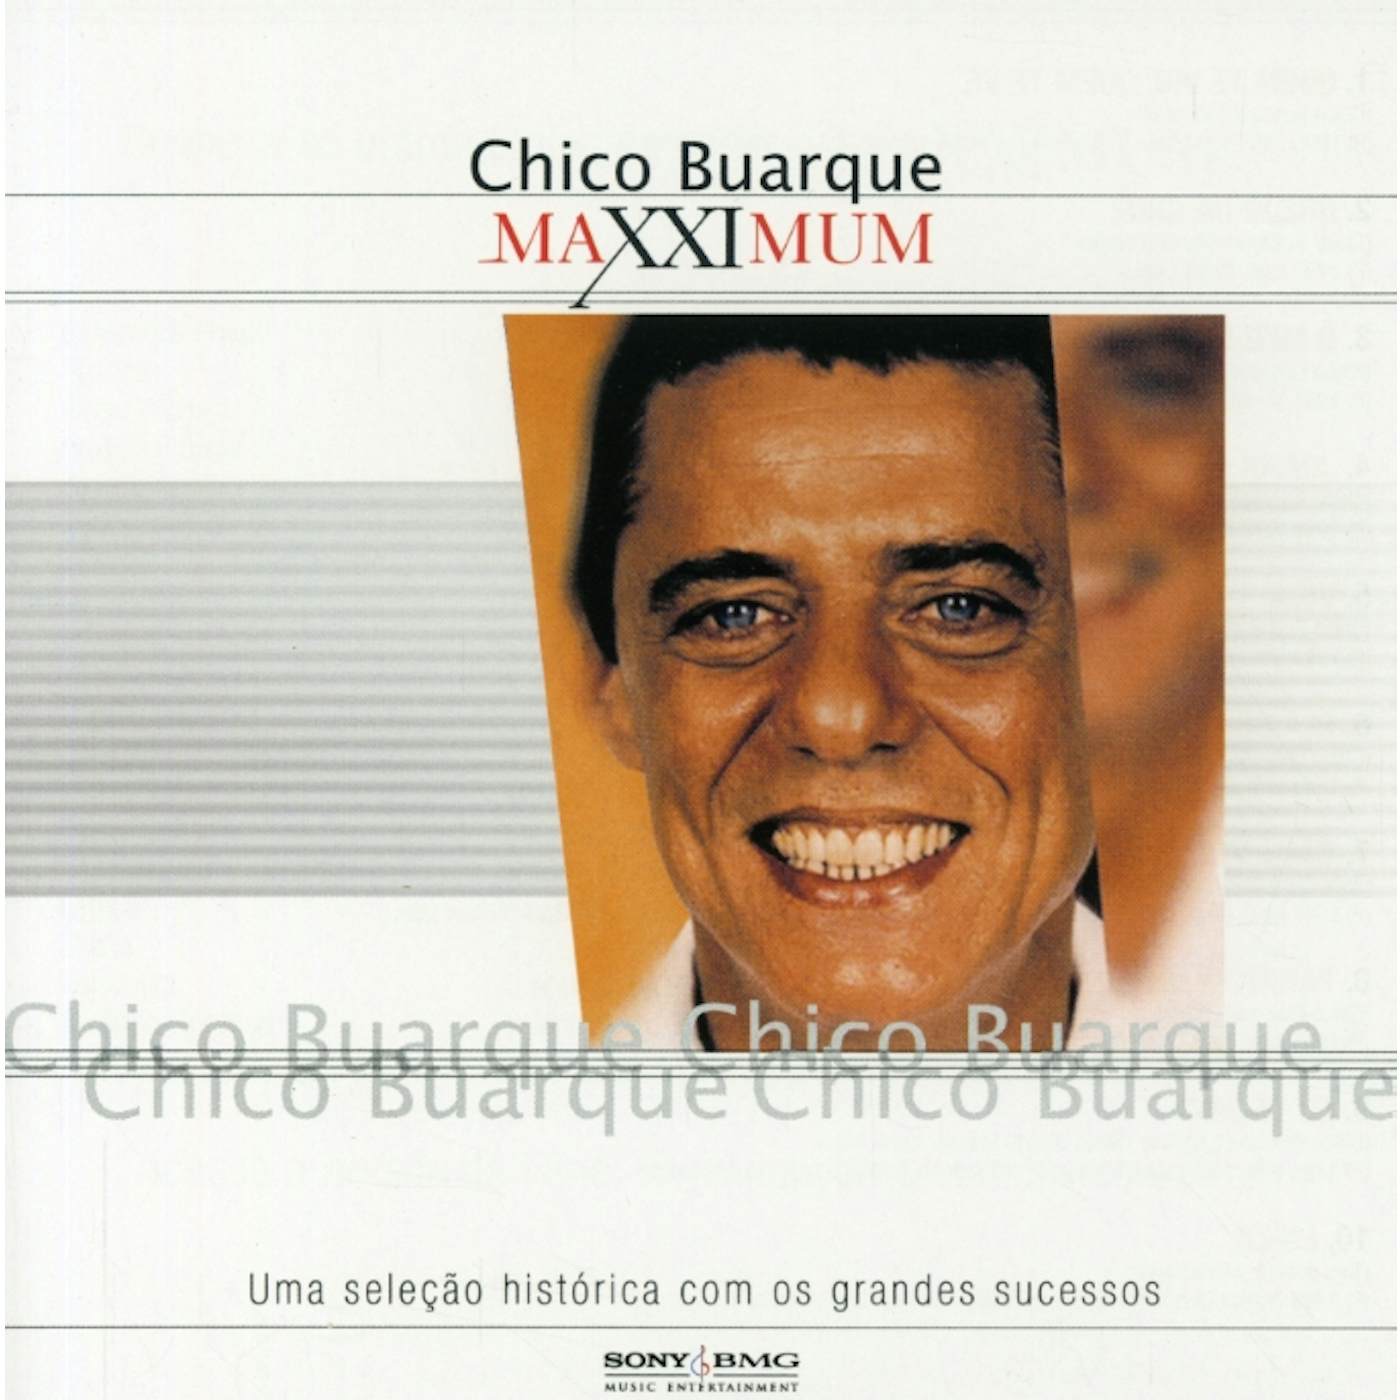 Chico Buarque MAXXIMUM CD